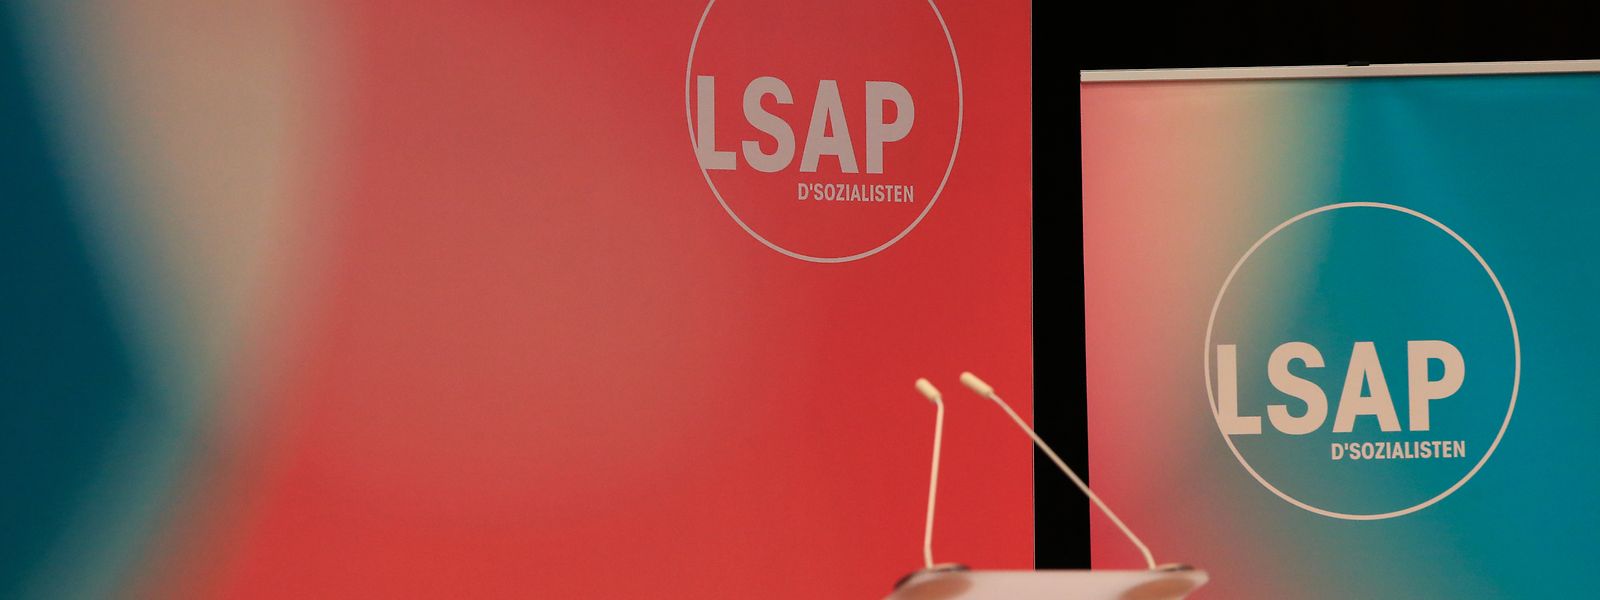 Die Sozialisten als Schlusslicht: Als letzte Partei lädt die LSAP erst kommende Woche zum Neujahrsempfang.